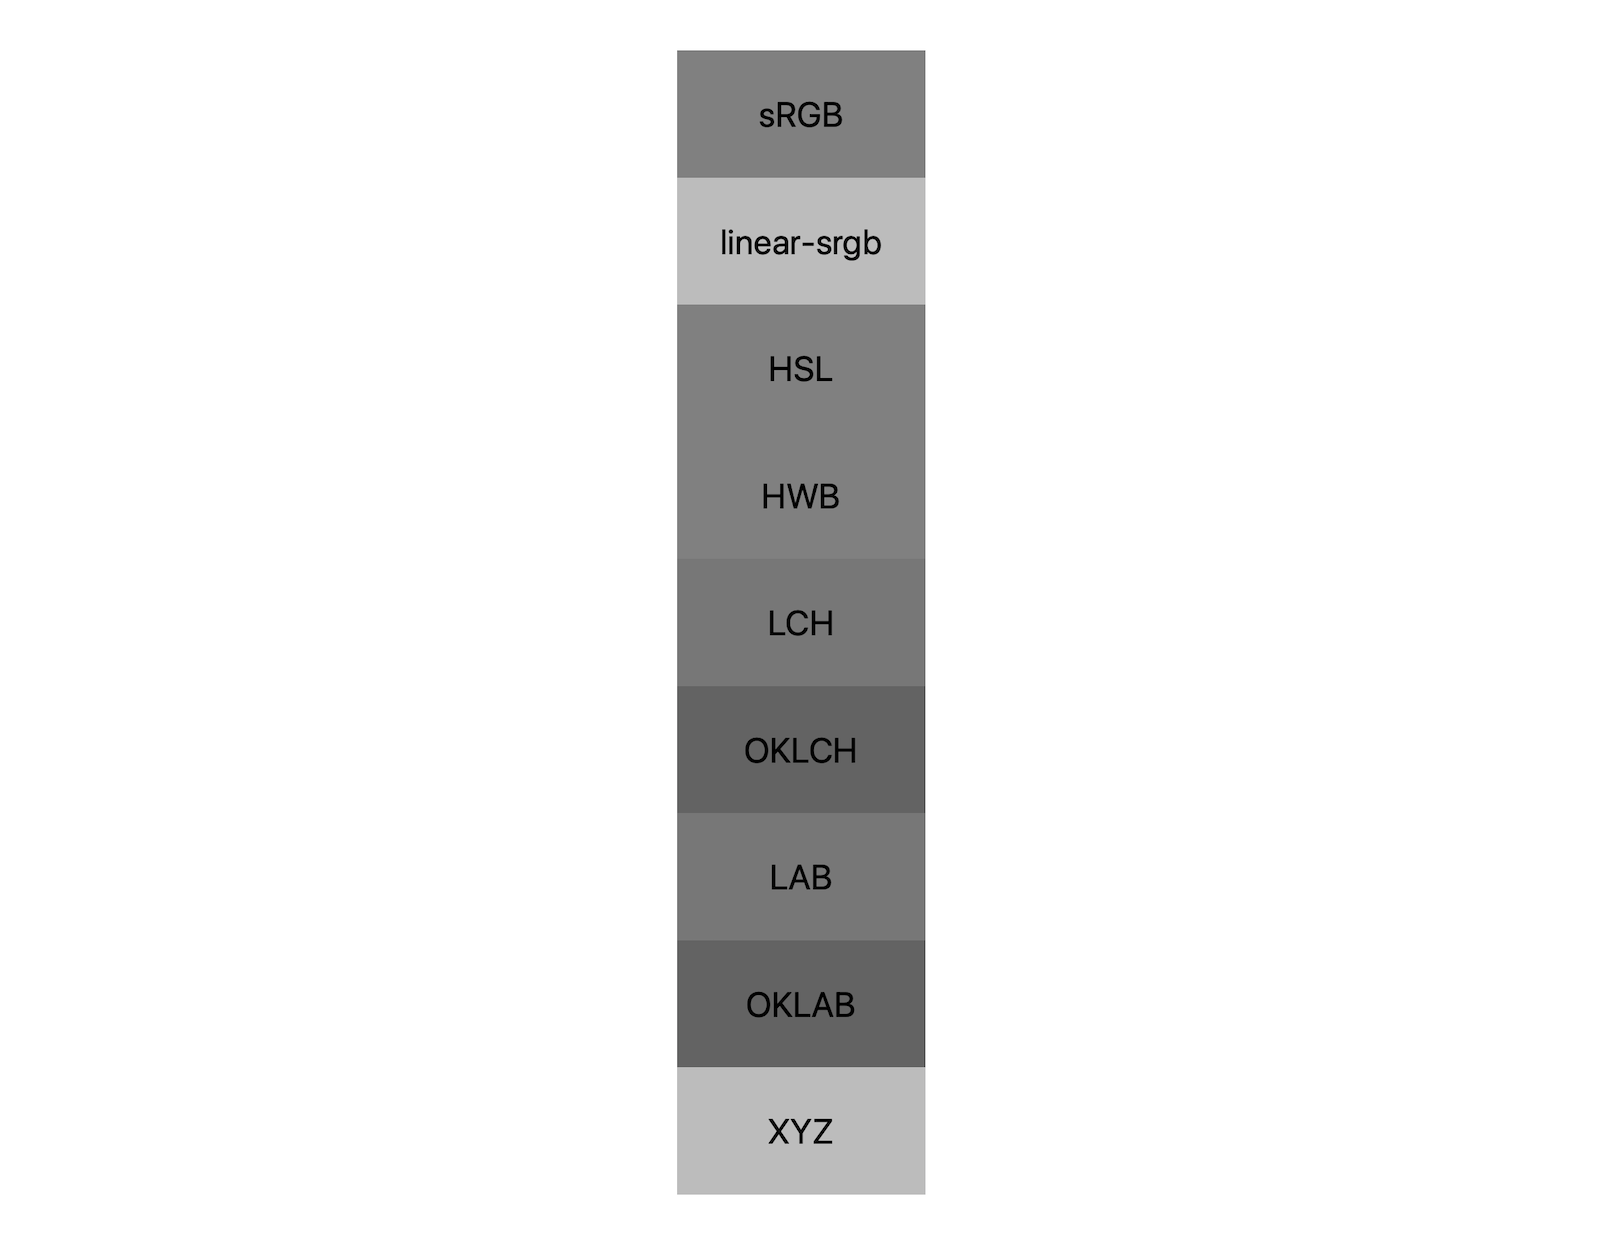 Sete espaços de cor (srgb, linear-srgb, lch, oklch, lab, oklab, xyz) mostram os resultados da mistura de preto e branco. Aproximadamente cinco tons são mostrados, demonstrando que cada espaço de cor vai se misturar a um cinza de maneira diferente.